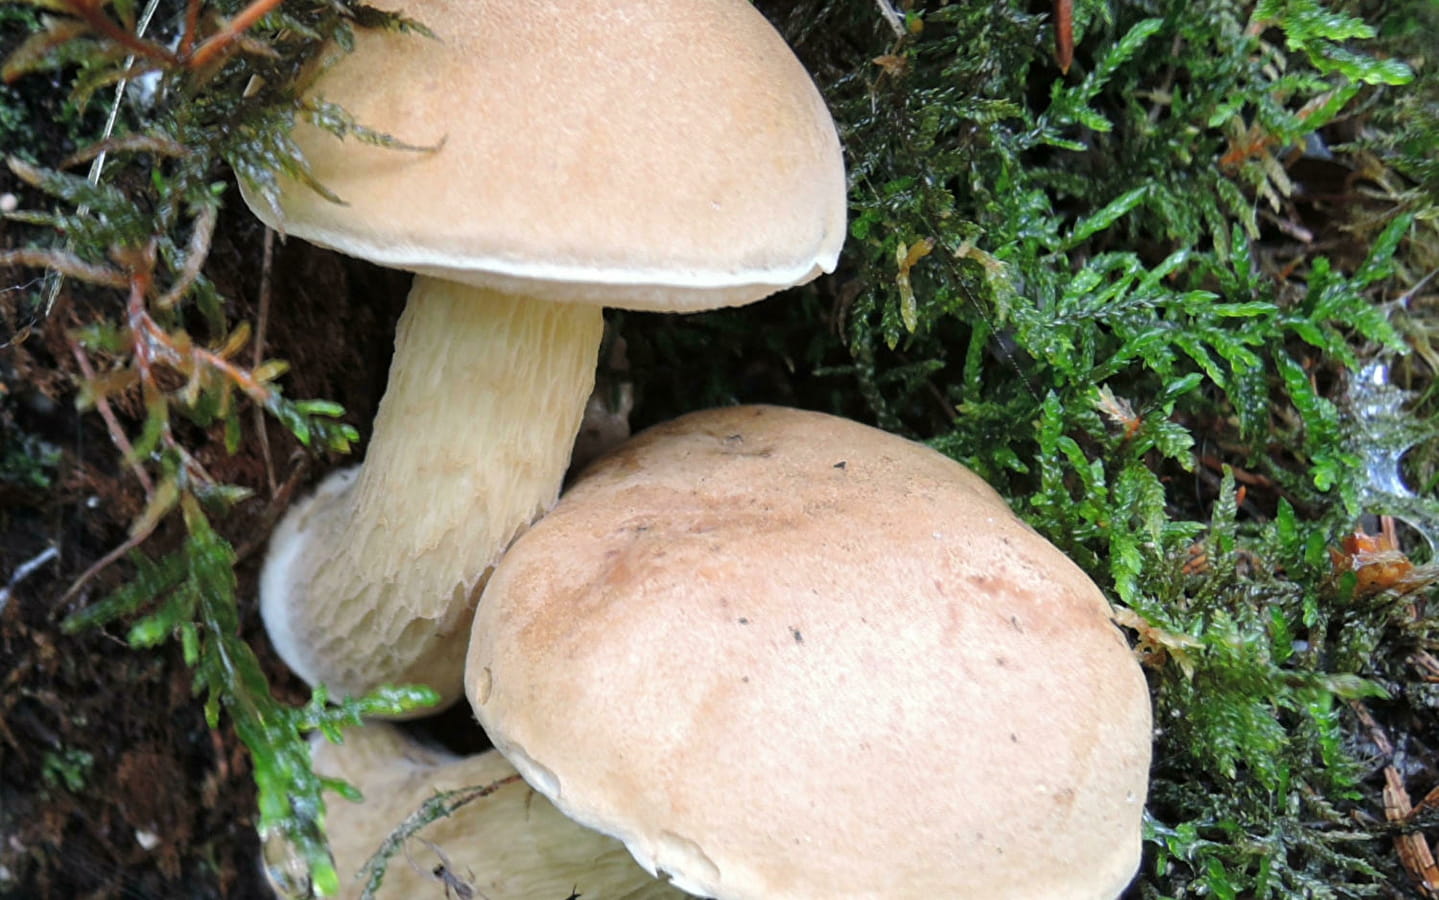 Nature in autumn - mushrooms and wild fruit